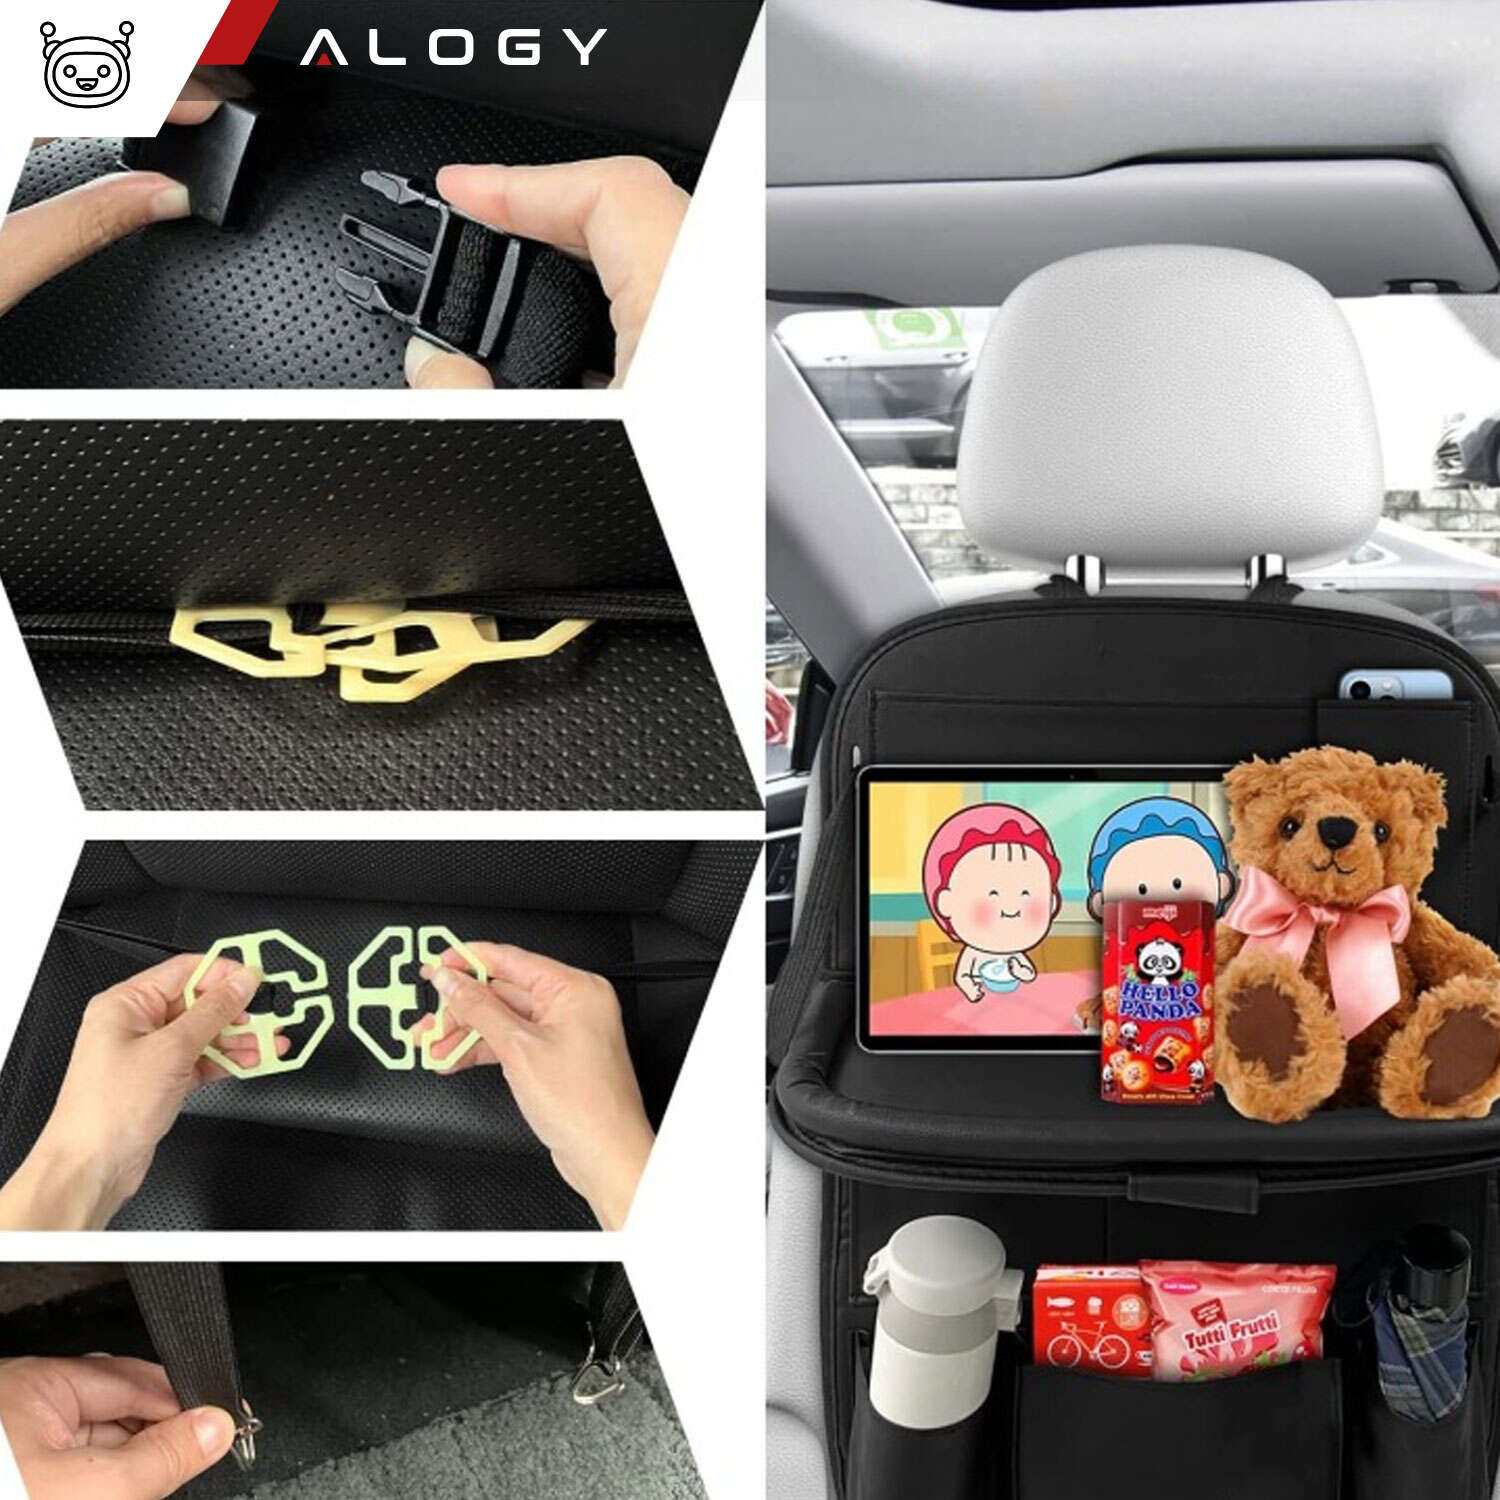 Auto-Organizer Alogy Car CO-S1 Autoetuihalter für Karten, Brille